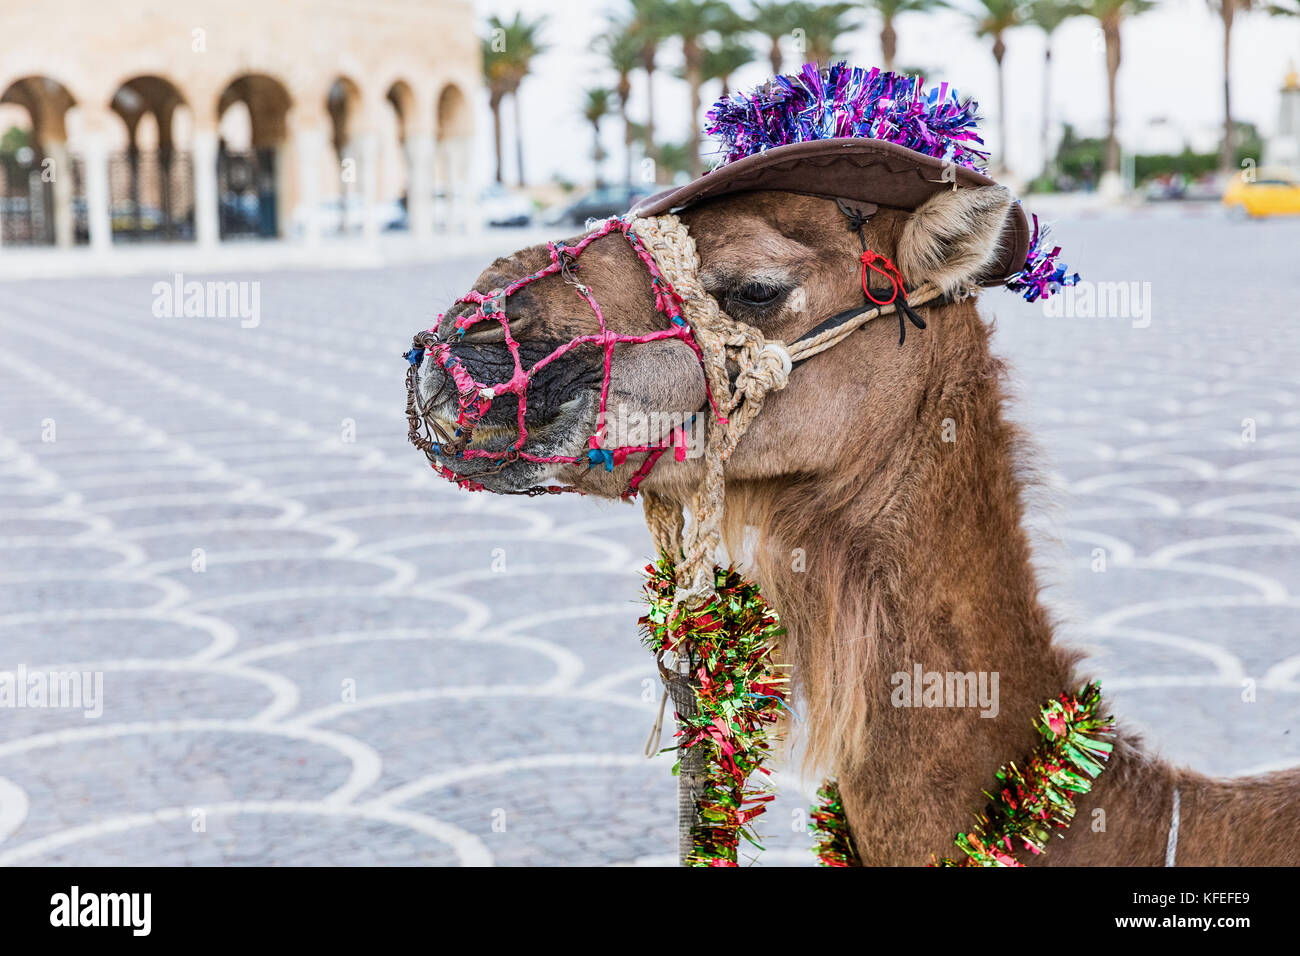 Cammello con ornamenti sulla sua testa sulla piazza di Habib Bourguiba con ombrosi arabo pavilion e fortezza medievale ribat di Monastir Tunisia Foto Stock